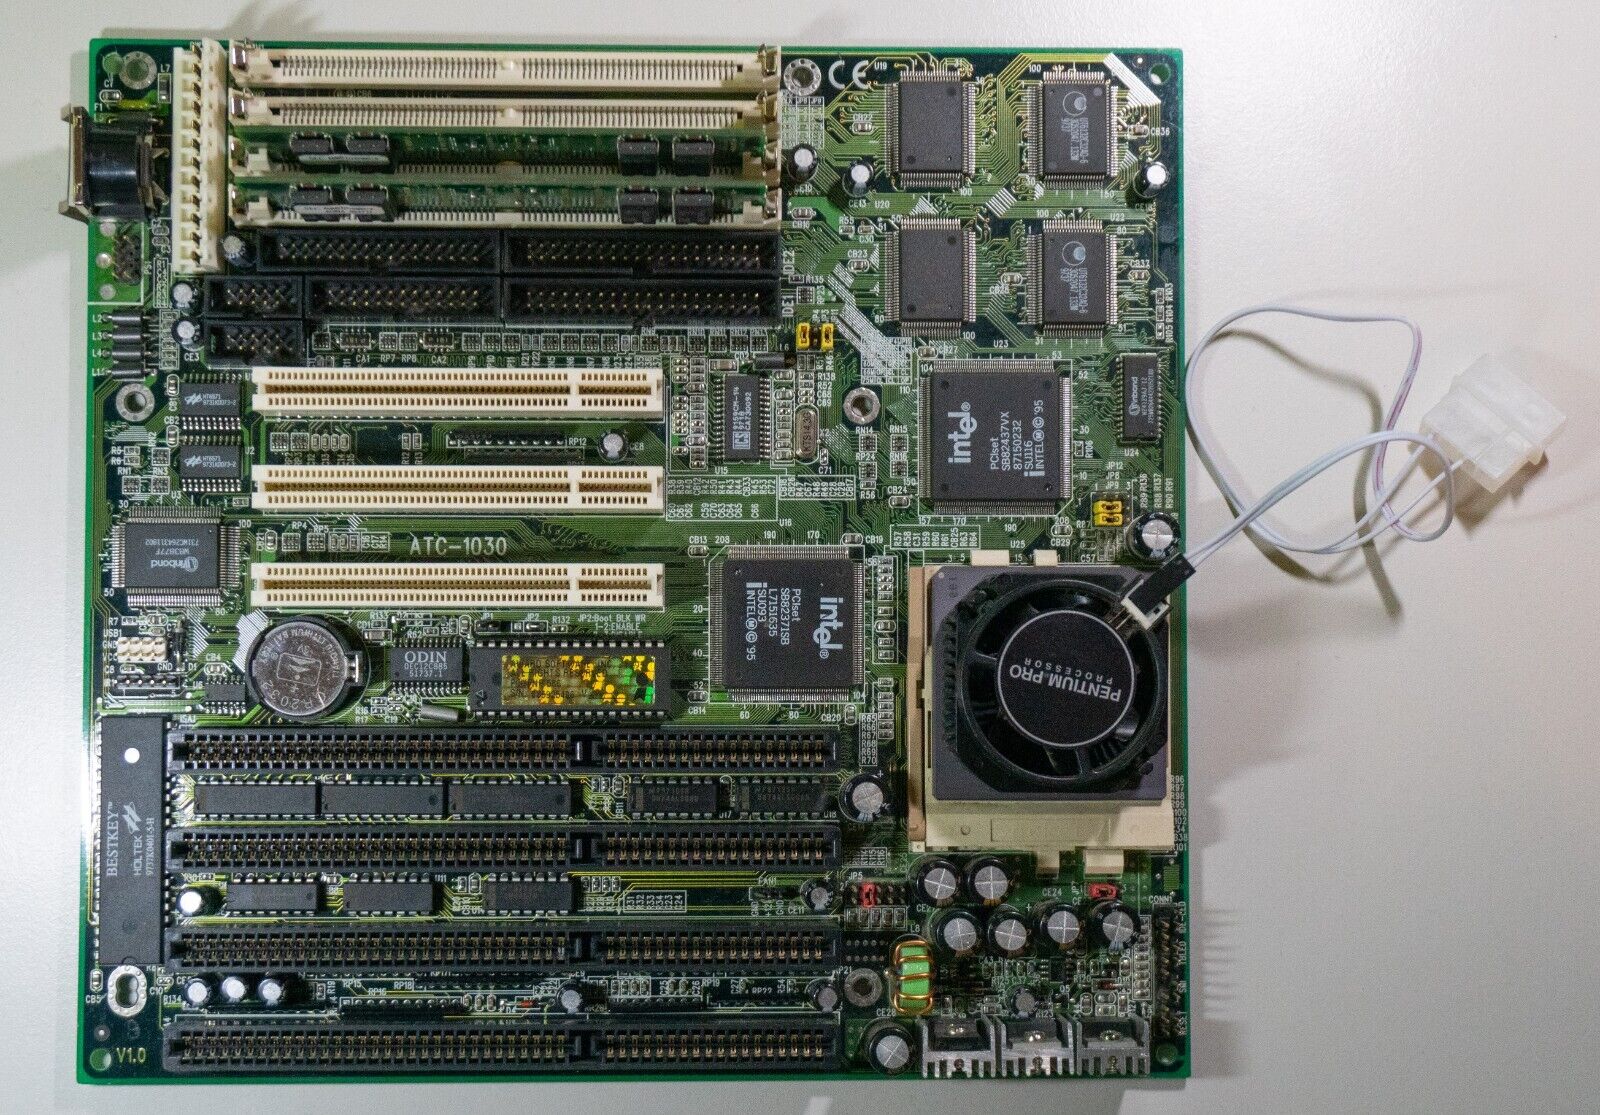 Pentium 100 CPU + Socket 7 motherboard + 16MB RAM